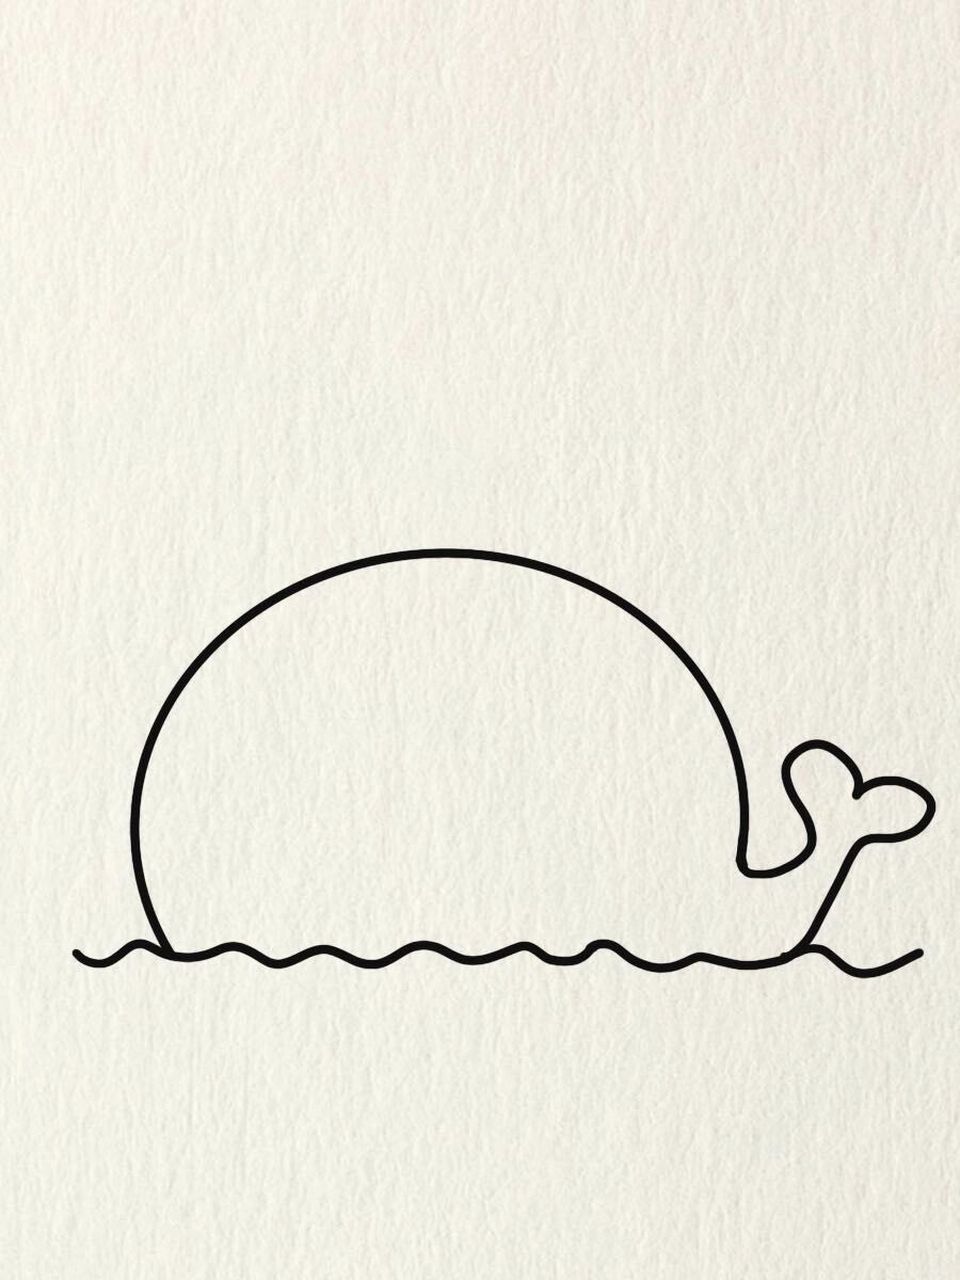 可爱的小鲸鱼怎么画图片